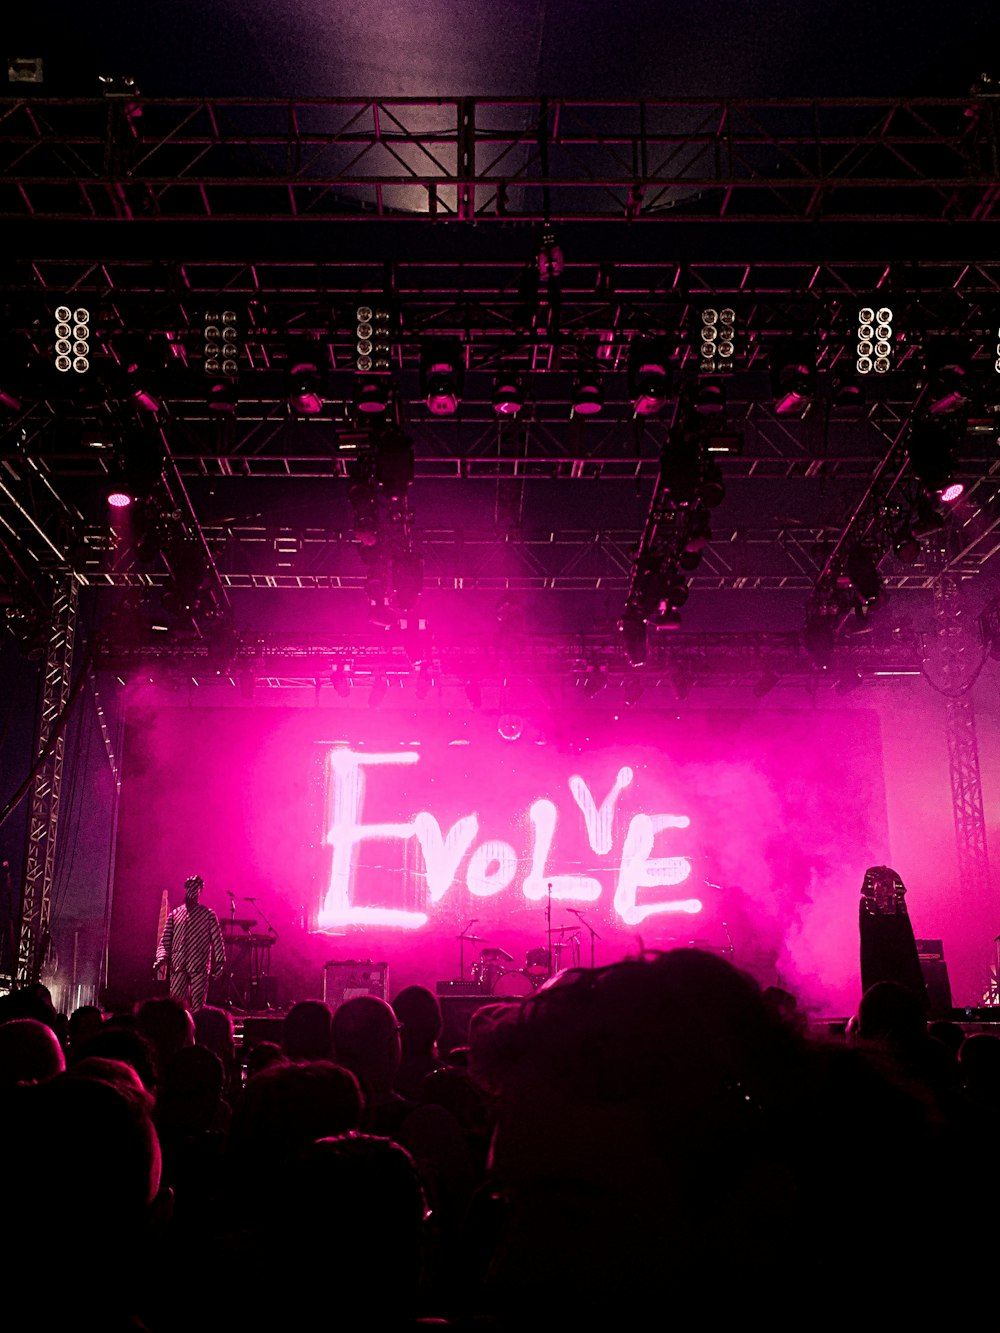 sinalização em neon rosa Evolve stage